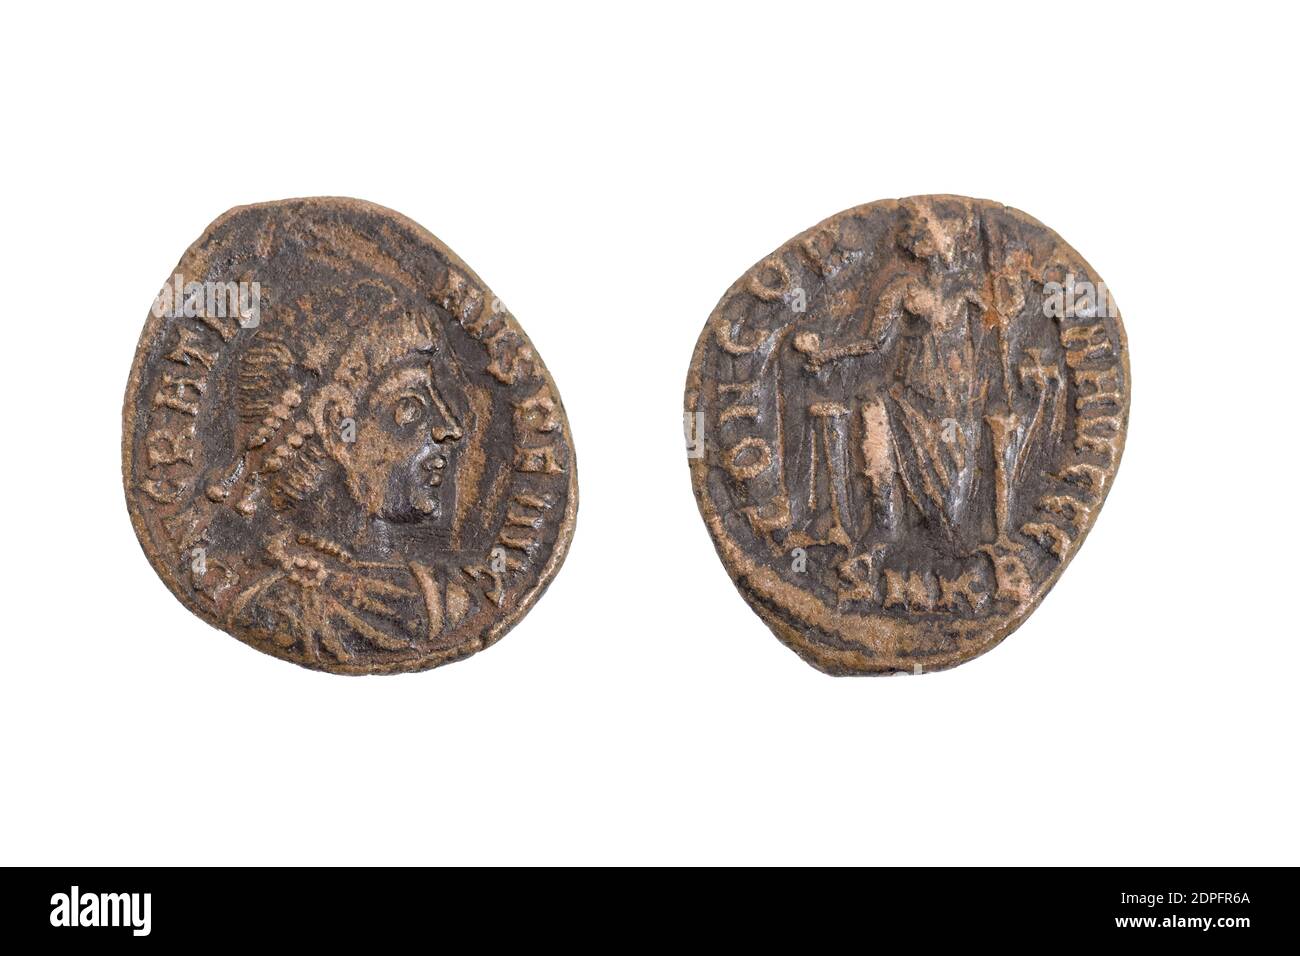 Alte alte alte Jahrgangsmünzmünzen Geld römische Bronze Kaiser Gratian 367 - 383 (Rückseite) Kaiser, der auf dem Thron sitzt und den Globus hält Stockfoto